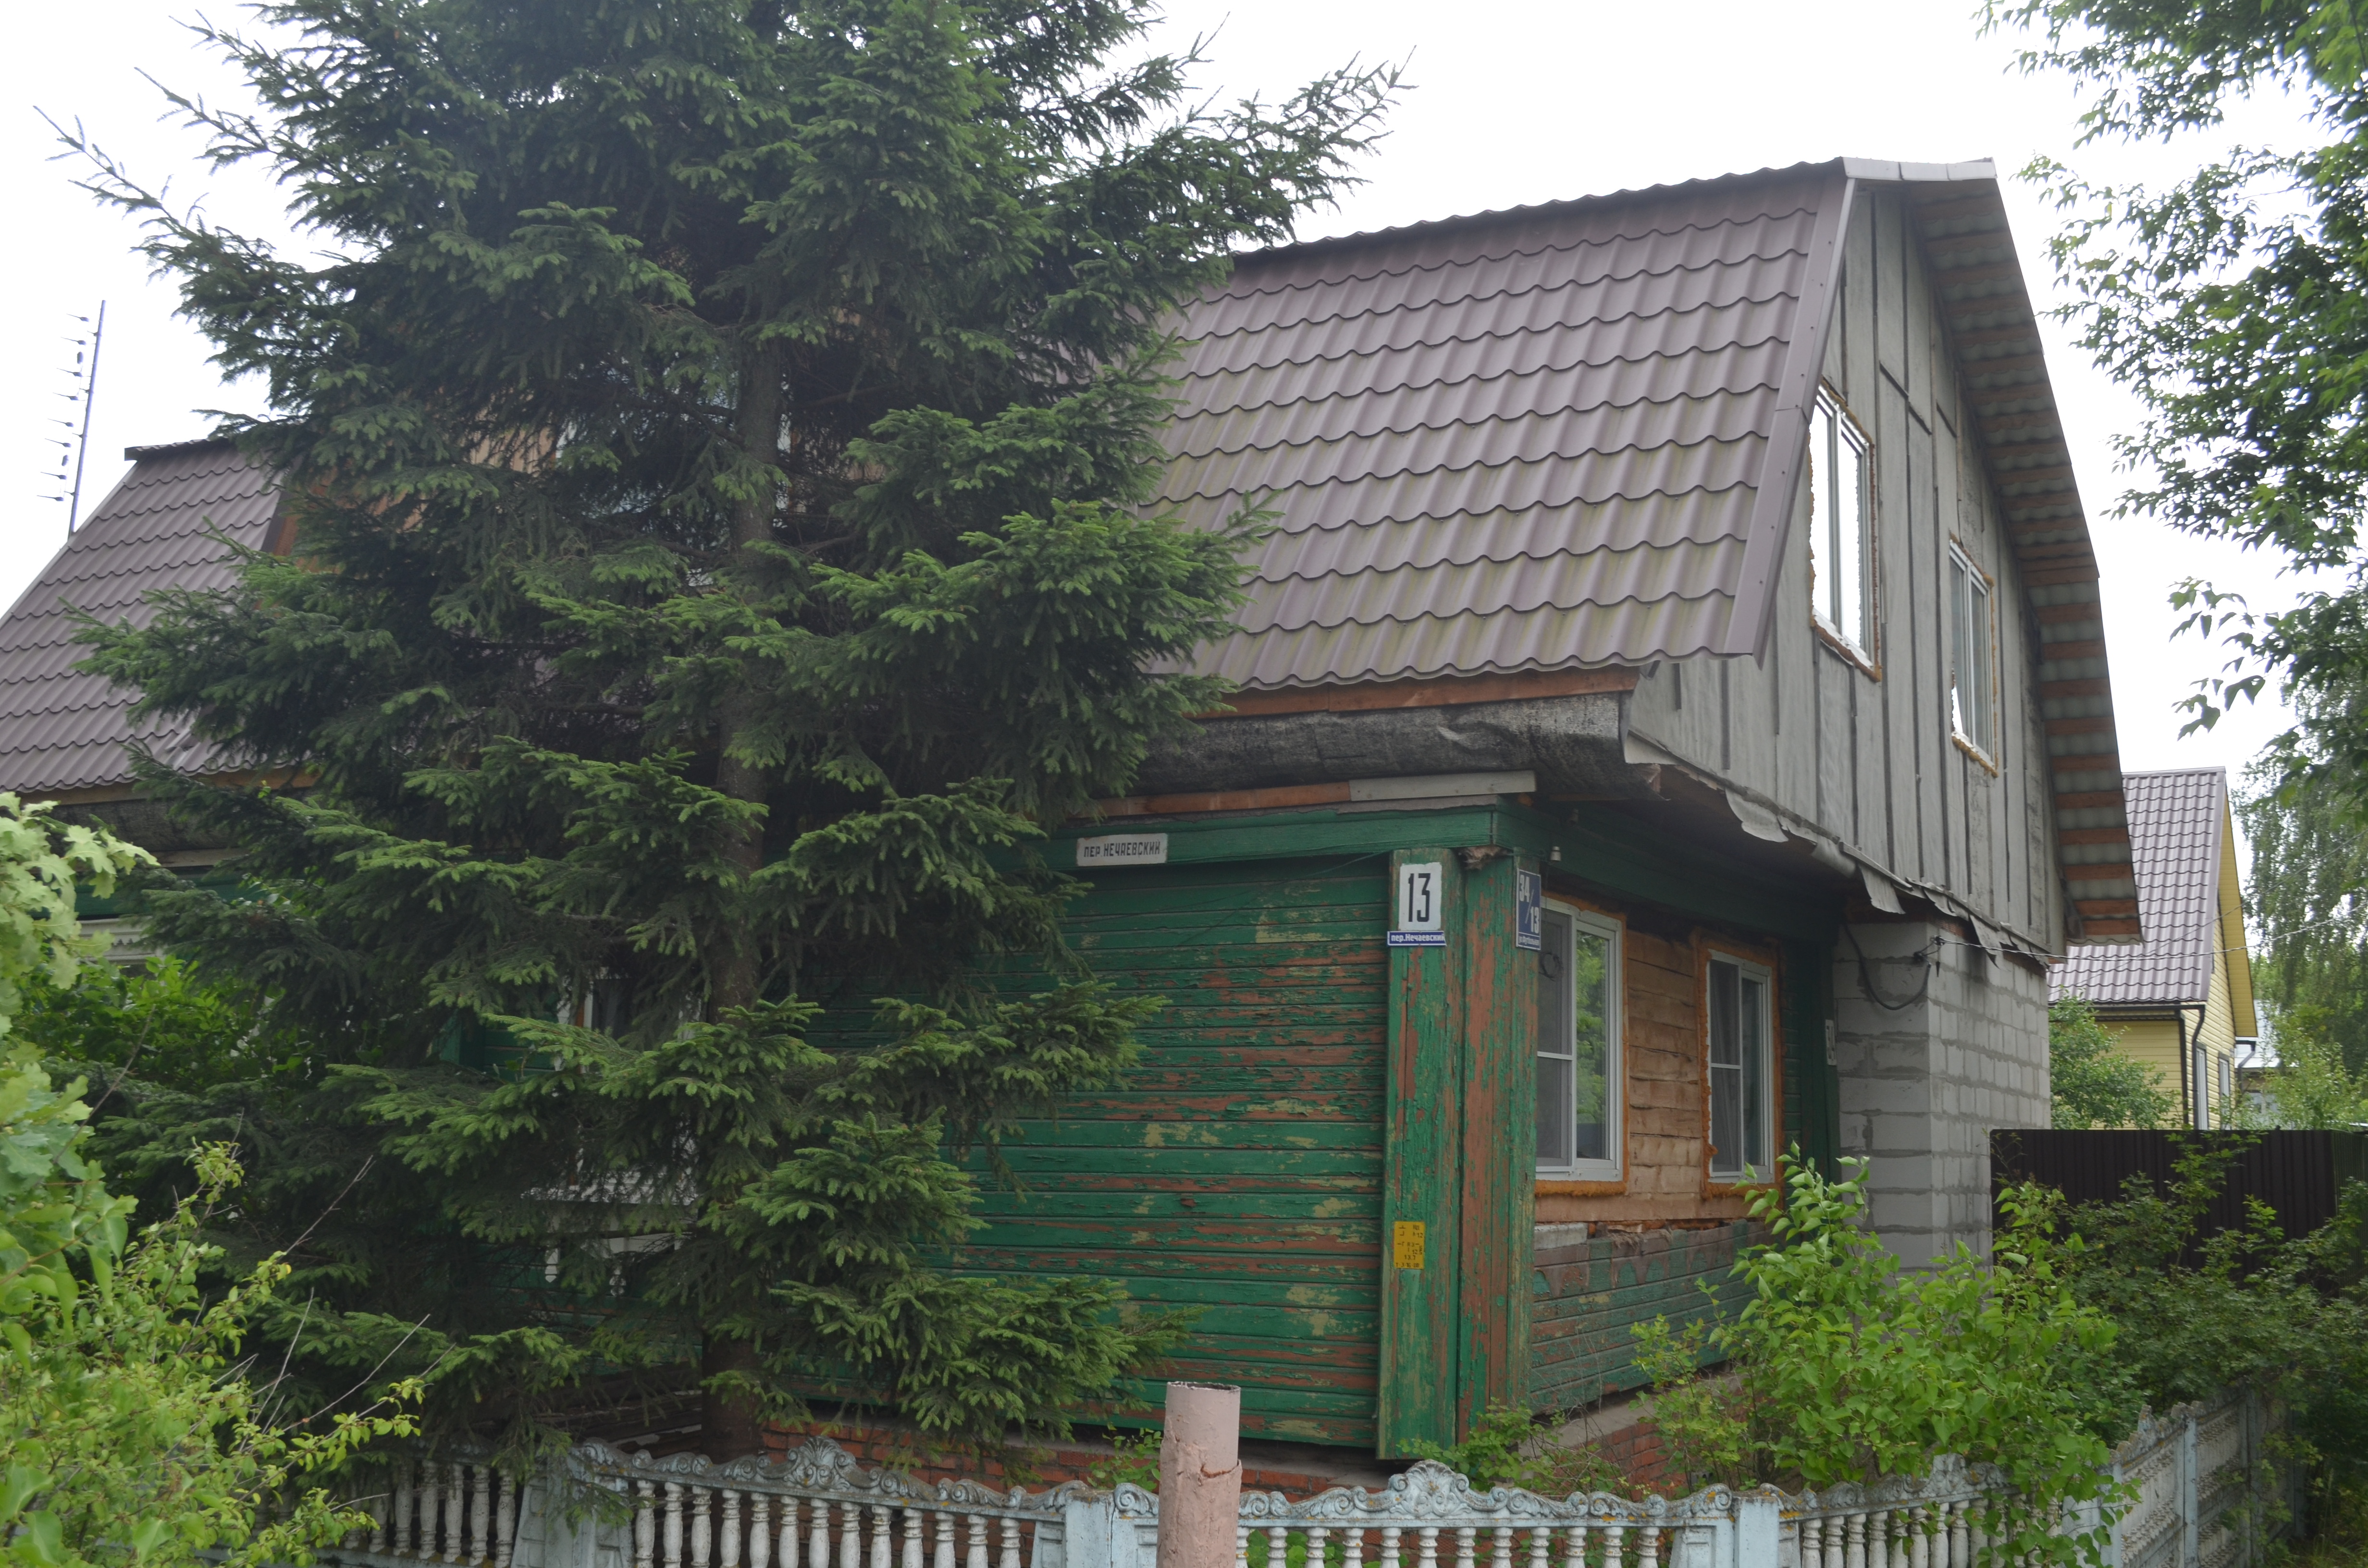 Измененный дом № 13 (Нечаевский пер., Егорьевск) Он же дом № 34 на Футбольной улице